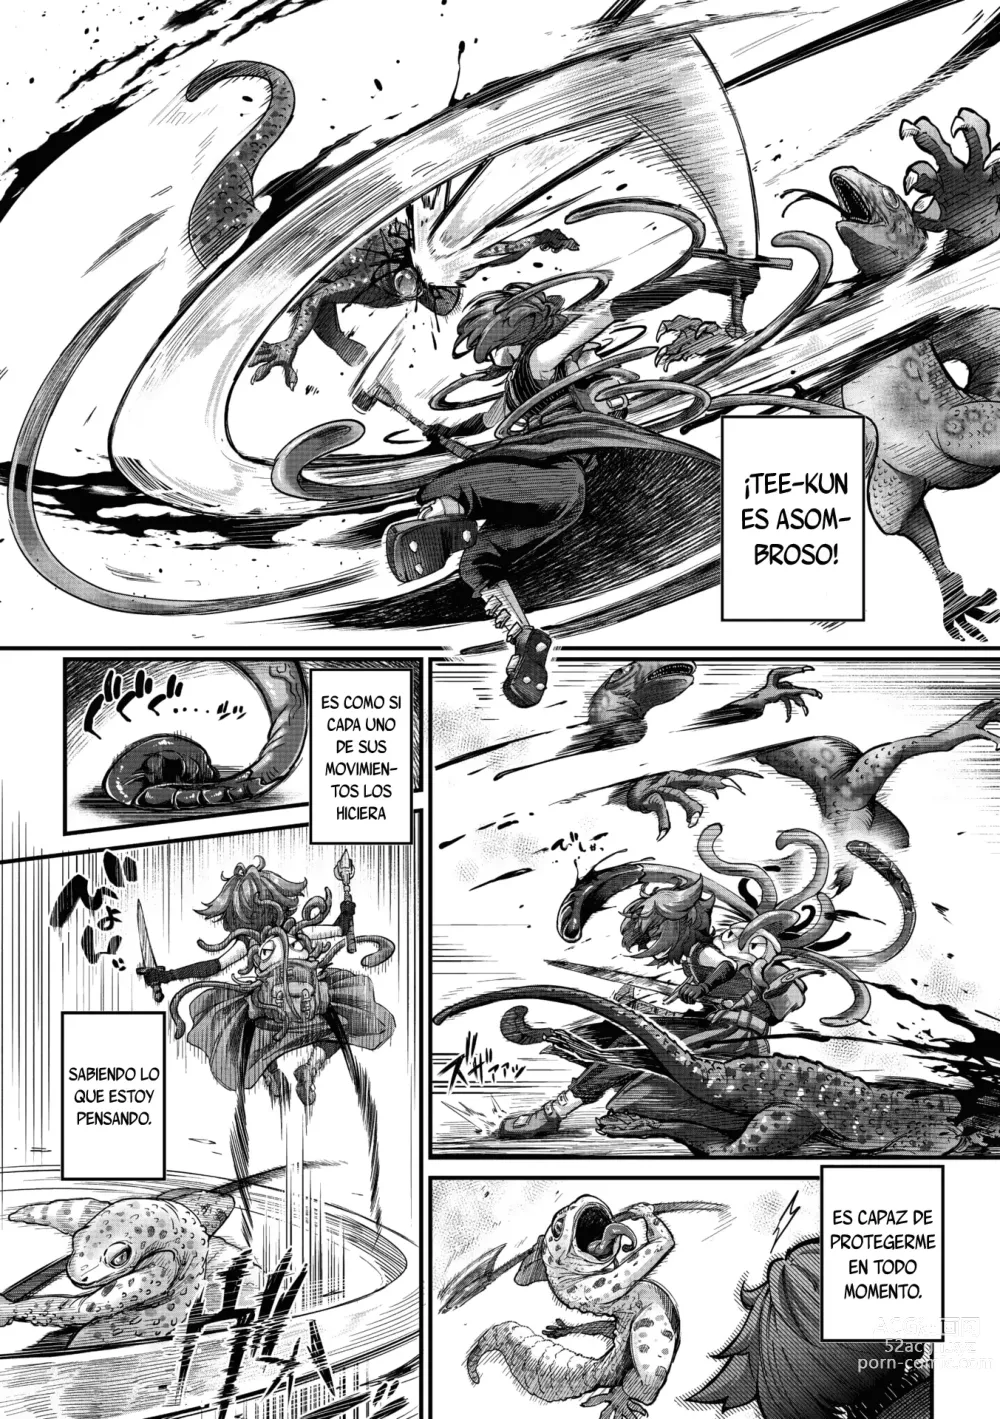 Page 3 of manga La guerrera y el tentáculo Cap 03 Monje-chan y Tentaculo Blindado-kun